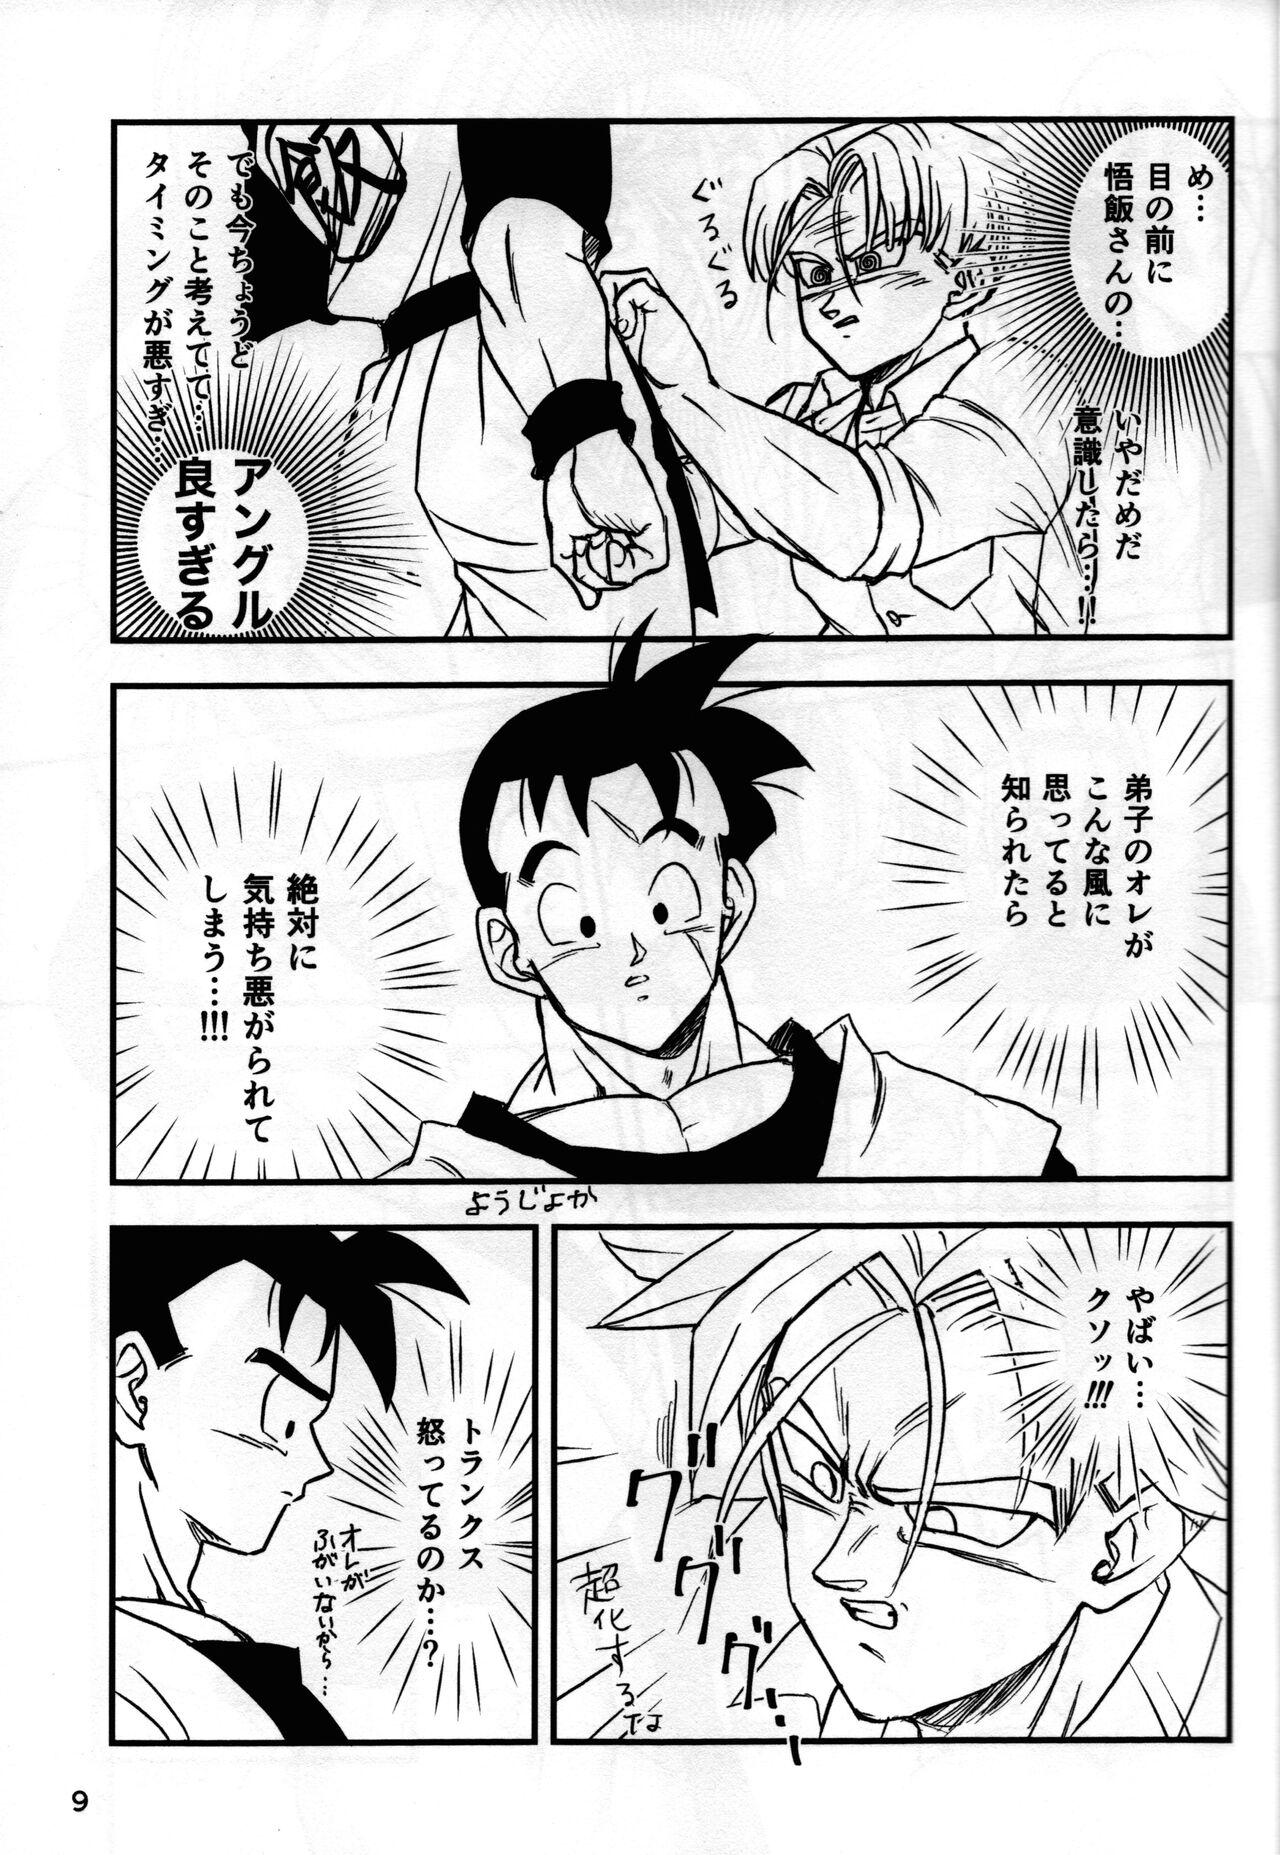 Lovers [Hakase] 2022 nenban tadashii (da) ki kata (Dragon Ball Z) - Dragon ball z Neighbor - Page 9